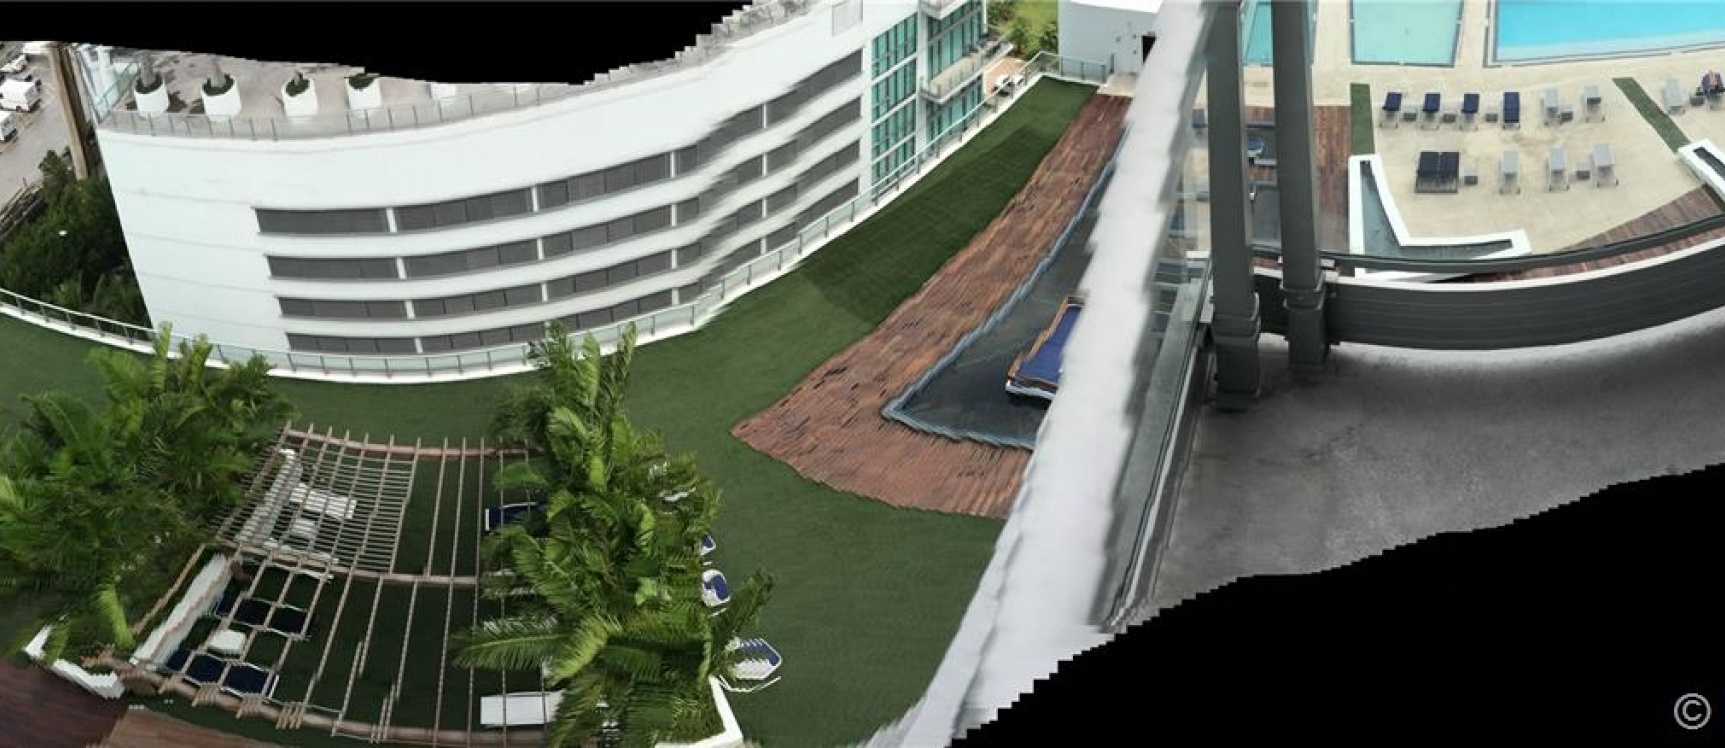 GeoBienes - Departamento a la Venta en Miami_ Brickell Area - Plusvalia Guayaquil Casas de venta y alquiler Inmobiliaria Ecuador